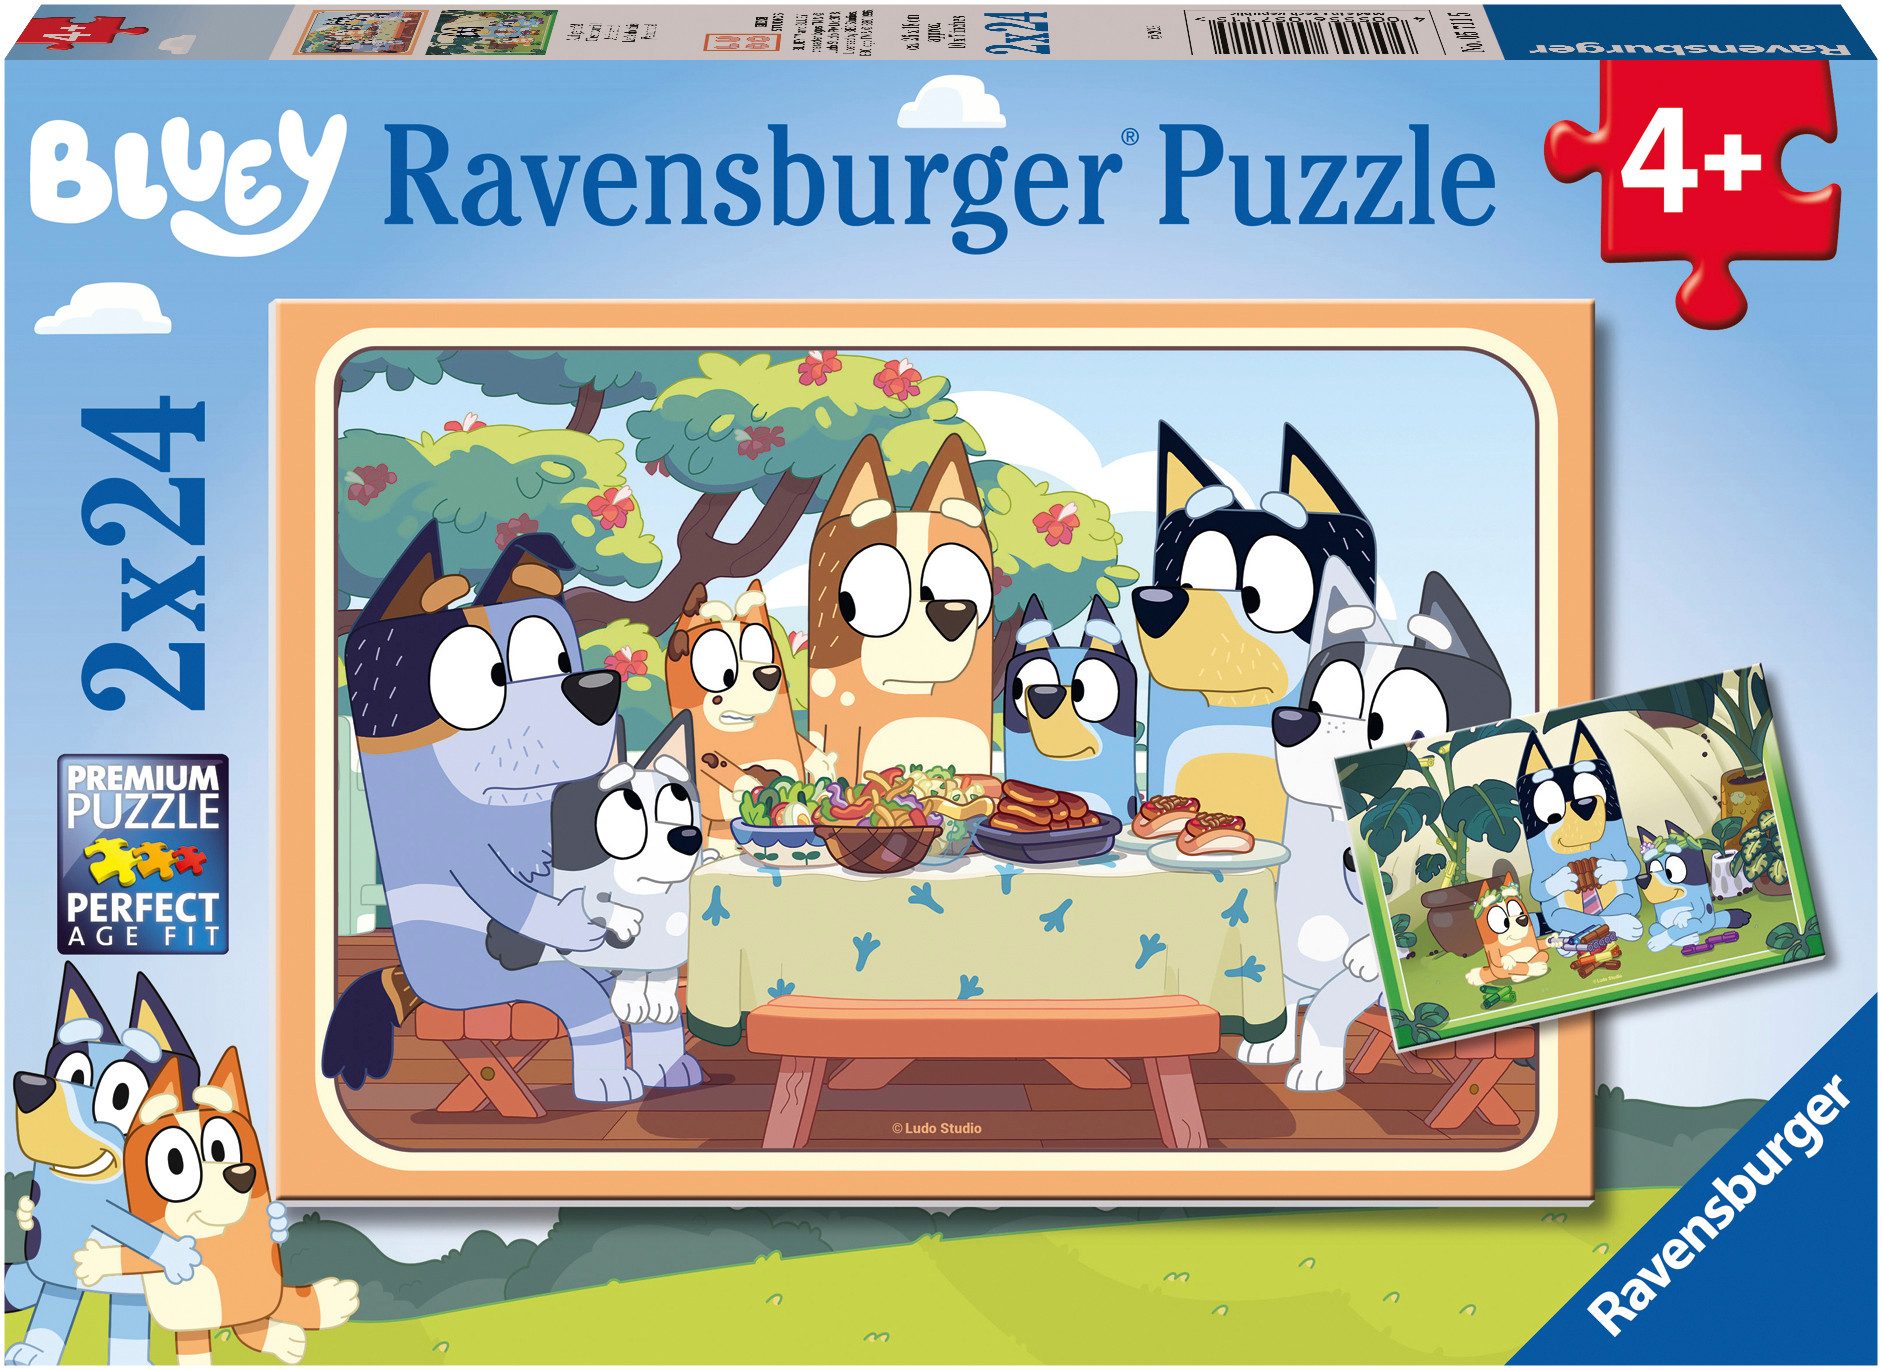 Ravensburger Puzzle Bluey, Auf geht's!, 48 Puzzleteile, Made in Europe, FSC® - schützt Wald - weltweit